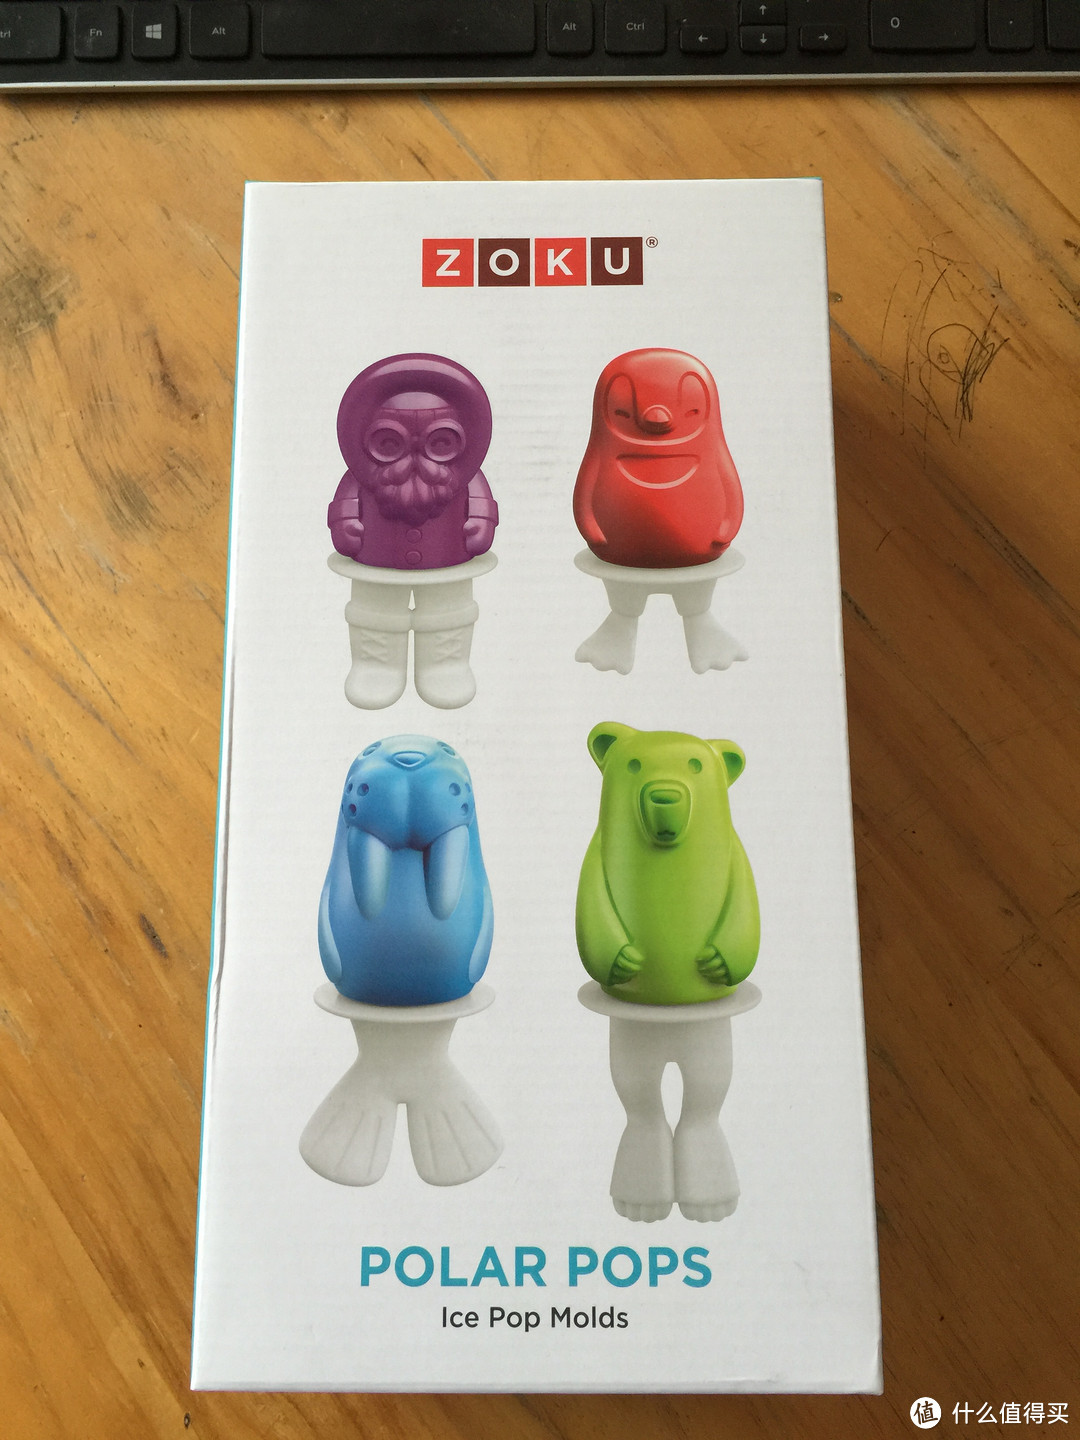 美国 ZOKU 卡通造型 冰棒模具 包装